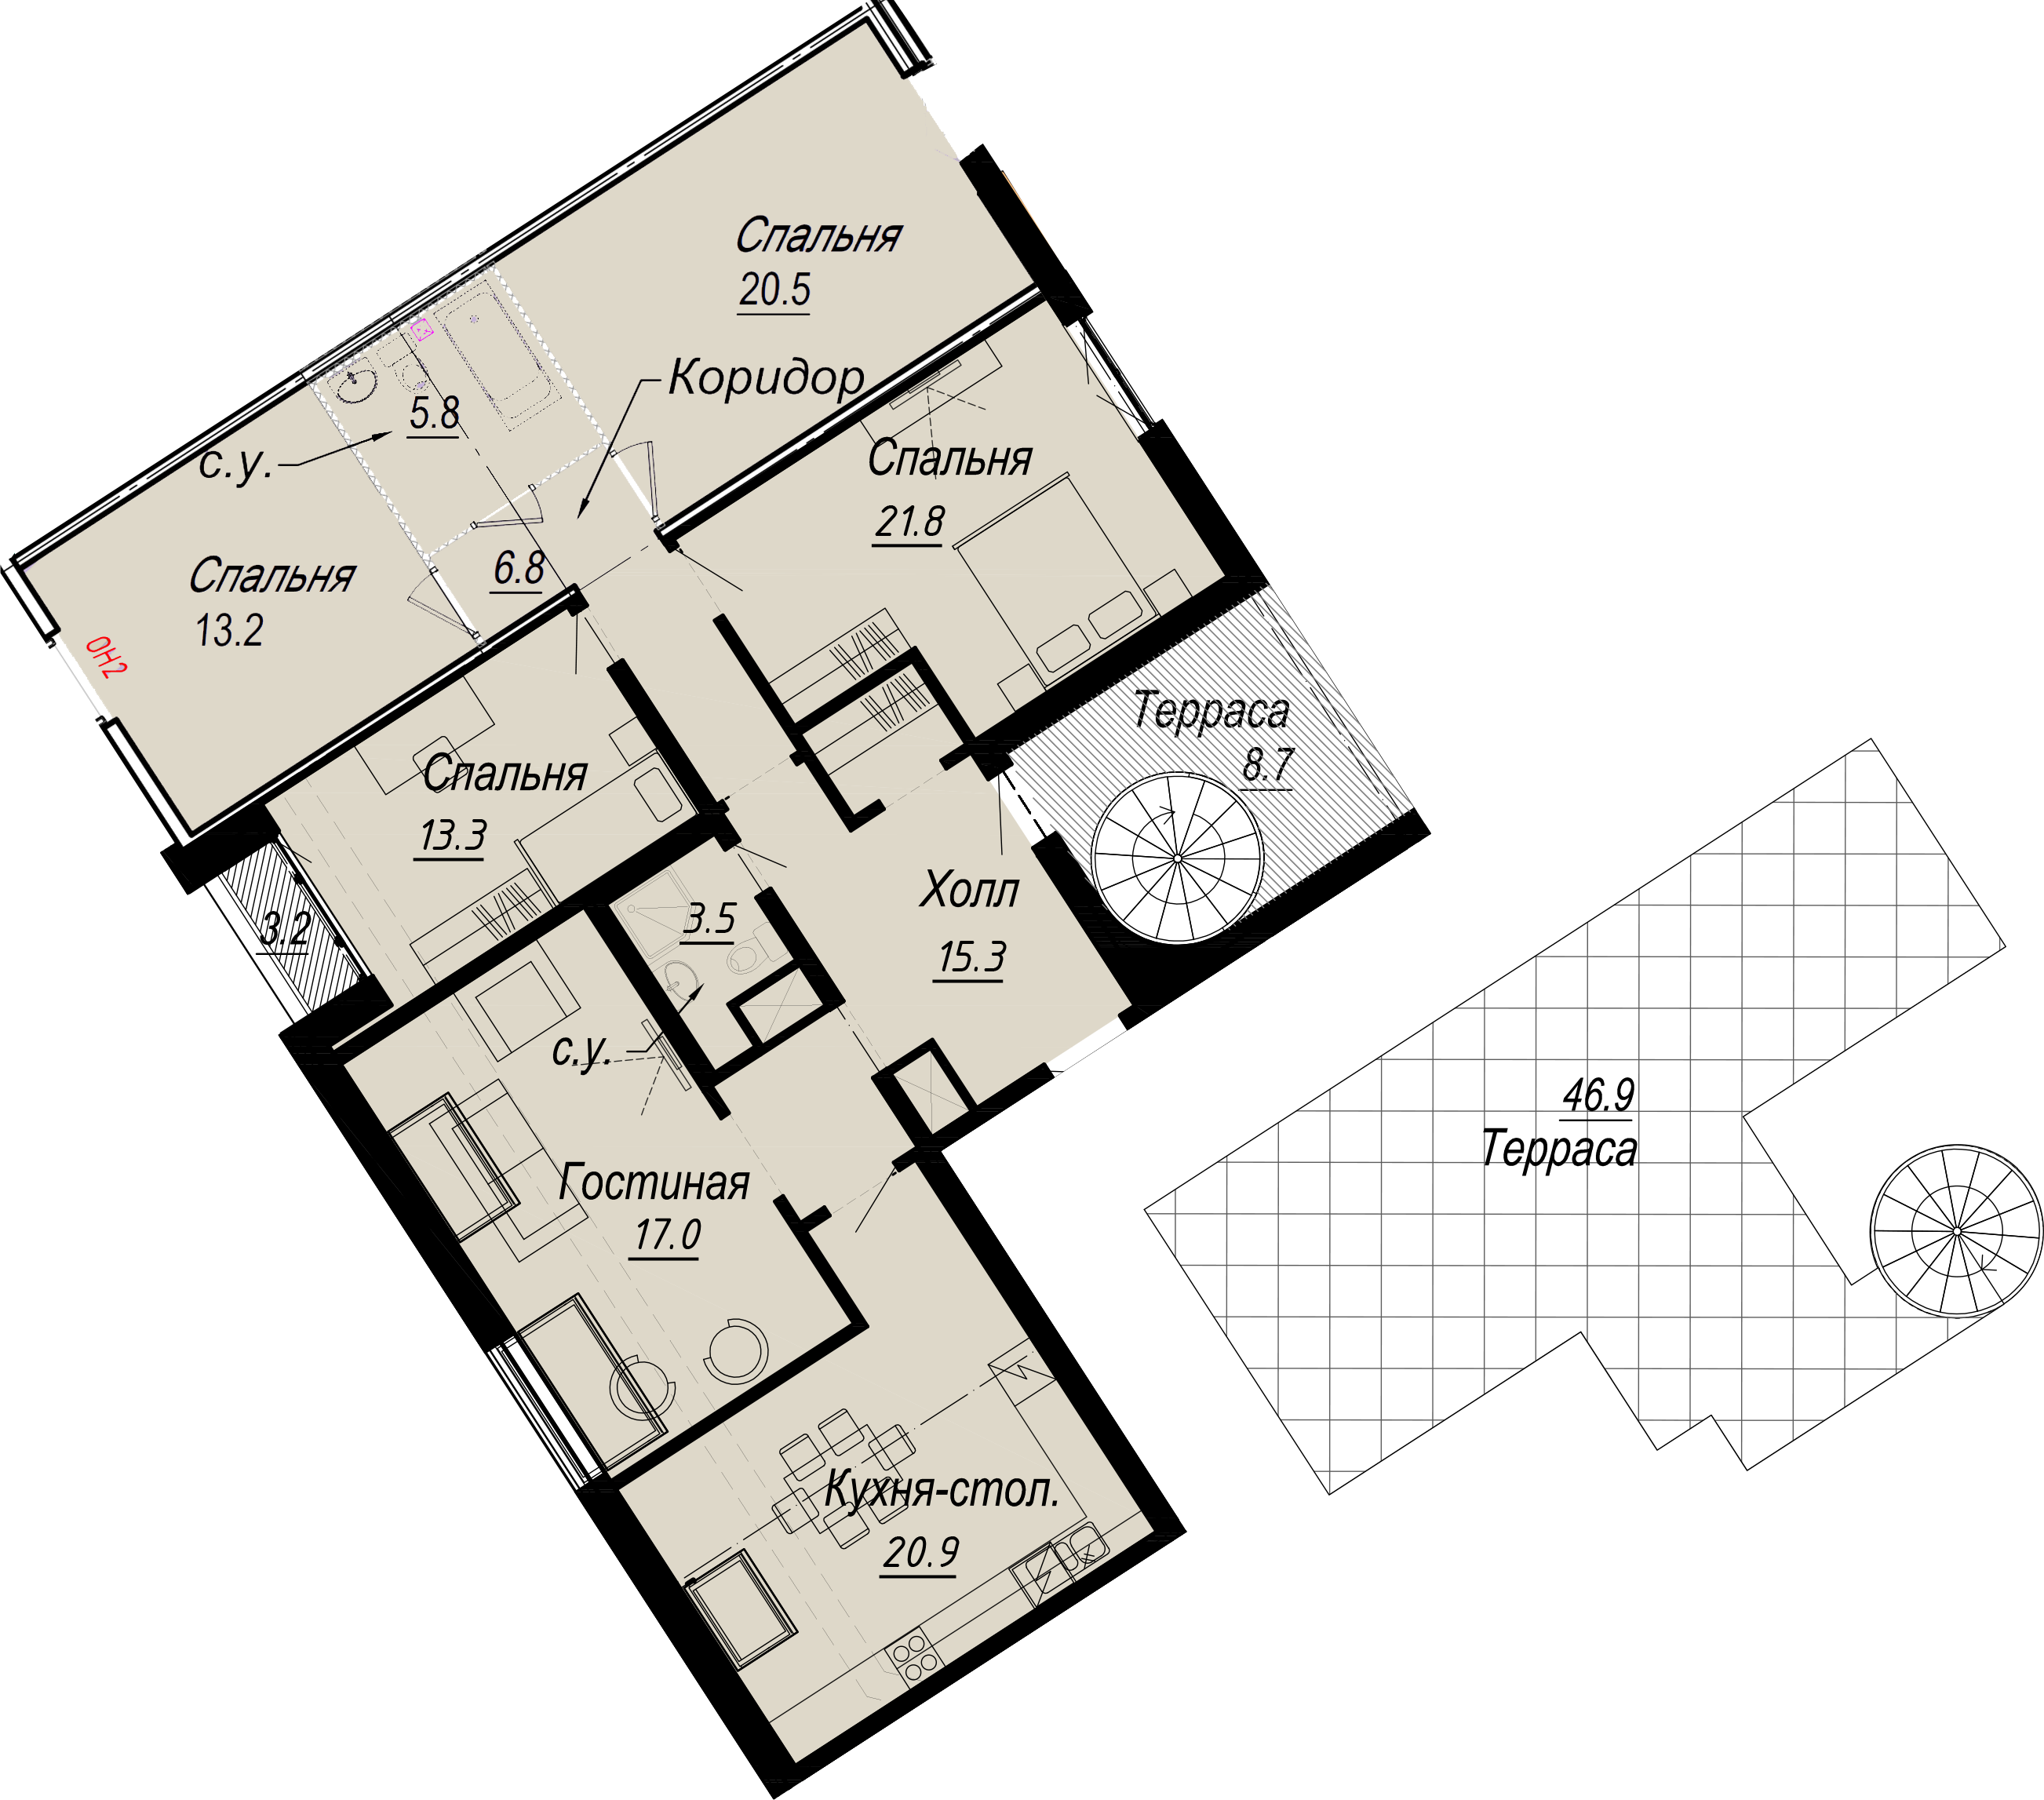 3-комнатная квартира  №3-8 в Meltzer Hall: 160.99 м², этаж 8 - купить в Санкт-Петербурге